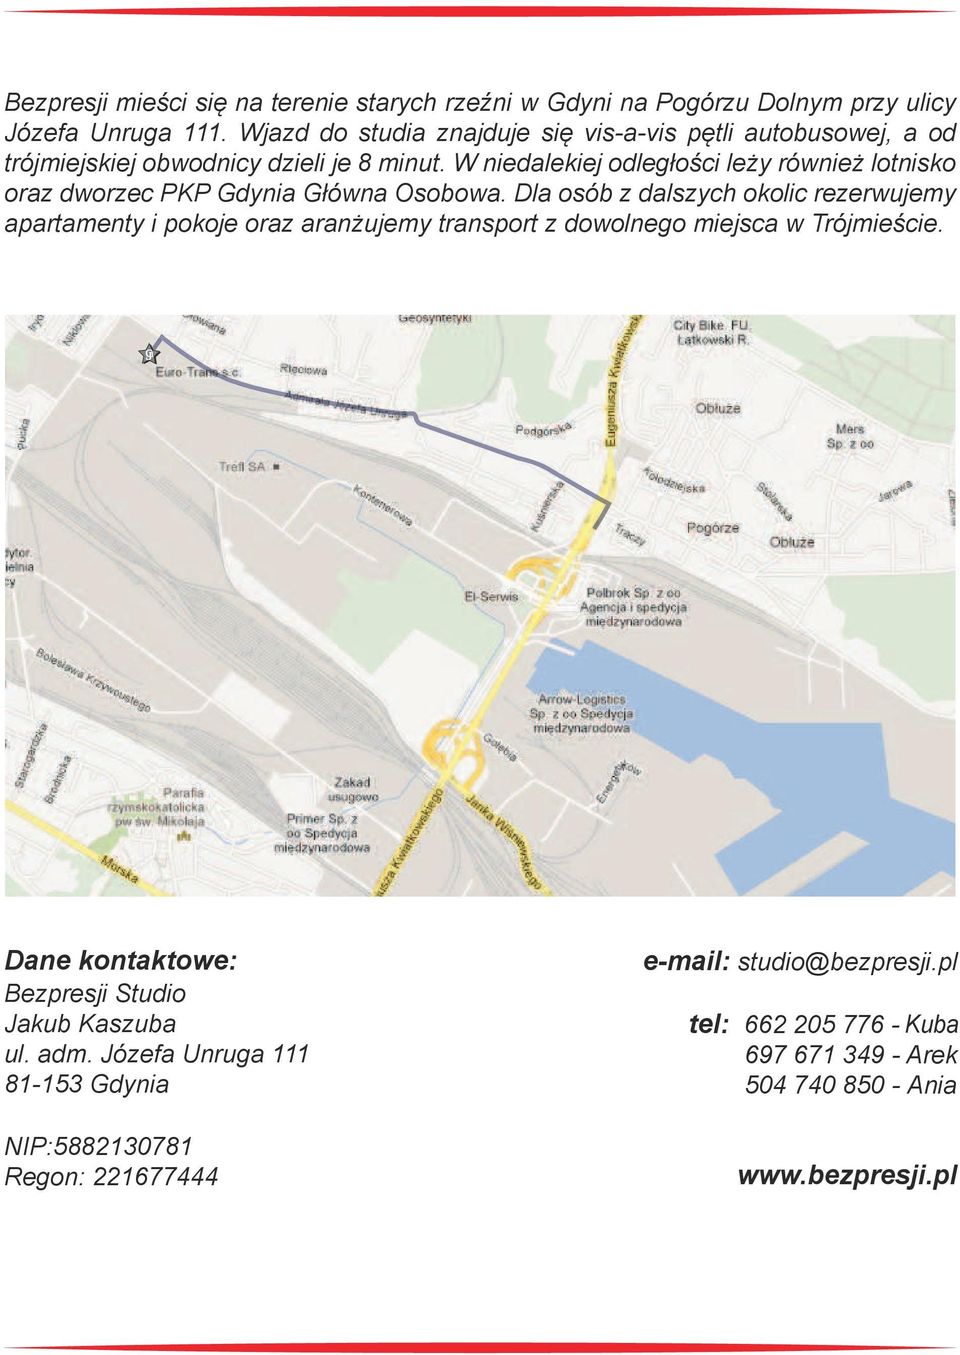 W niedalekiej odległości leży również lotnisko oraz dworzec PKP Gdynia Główna Osobowa.